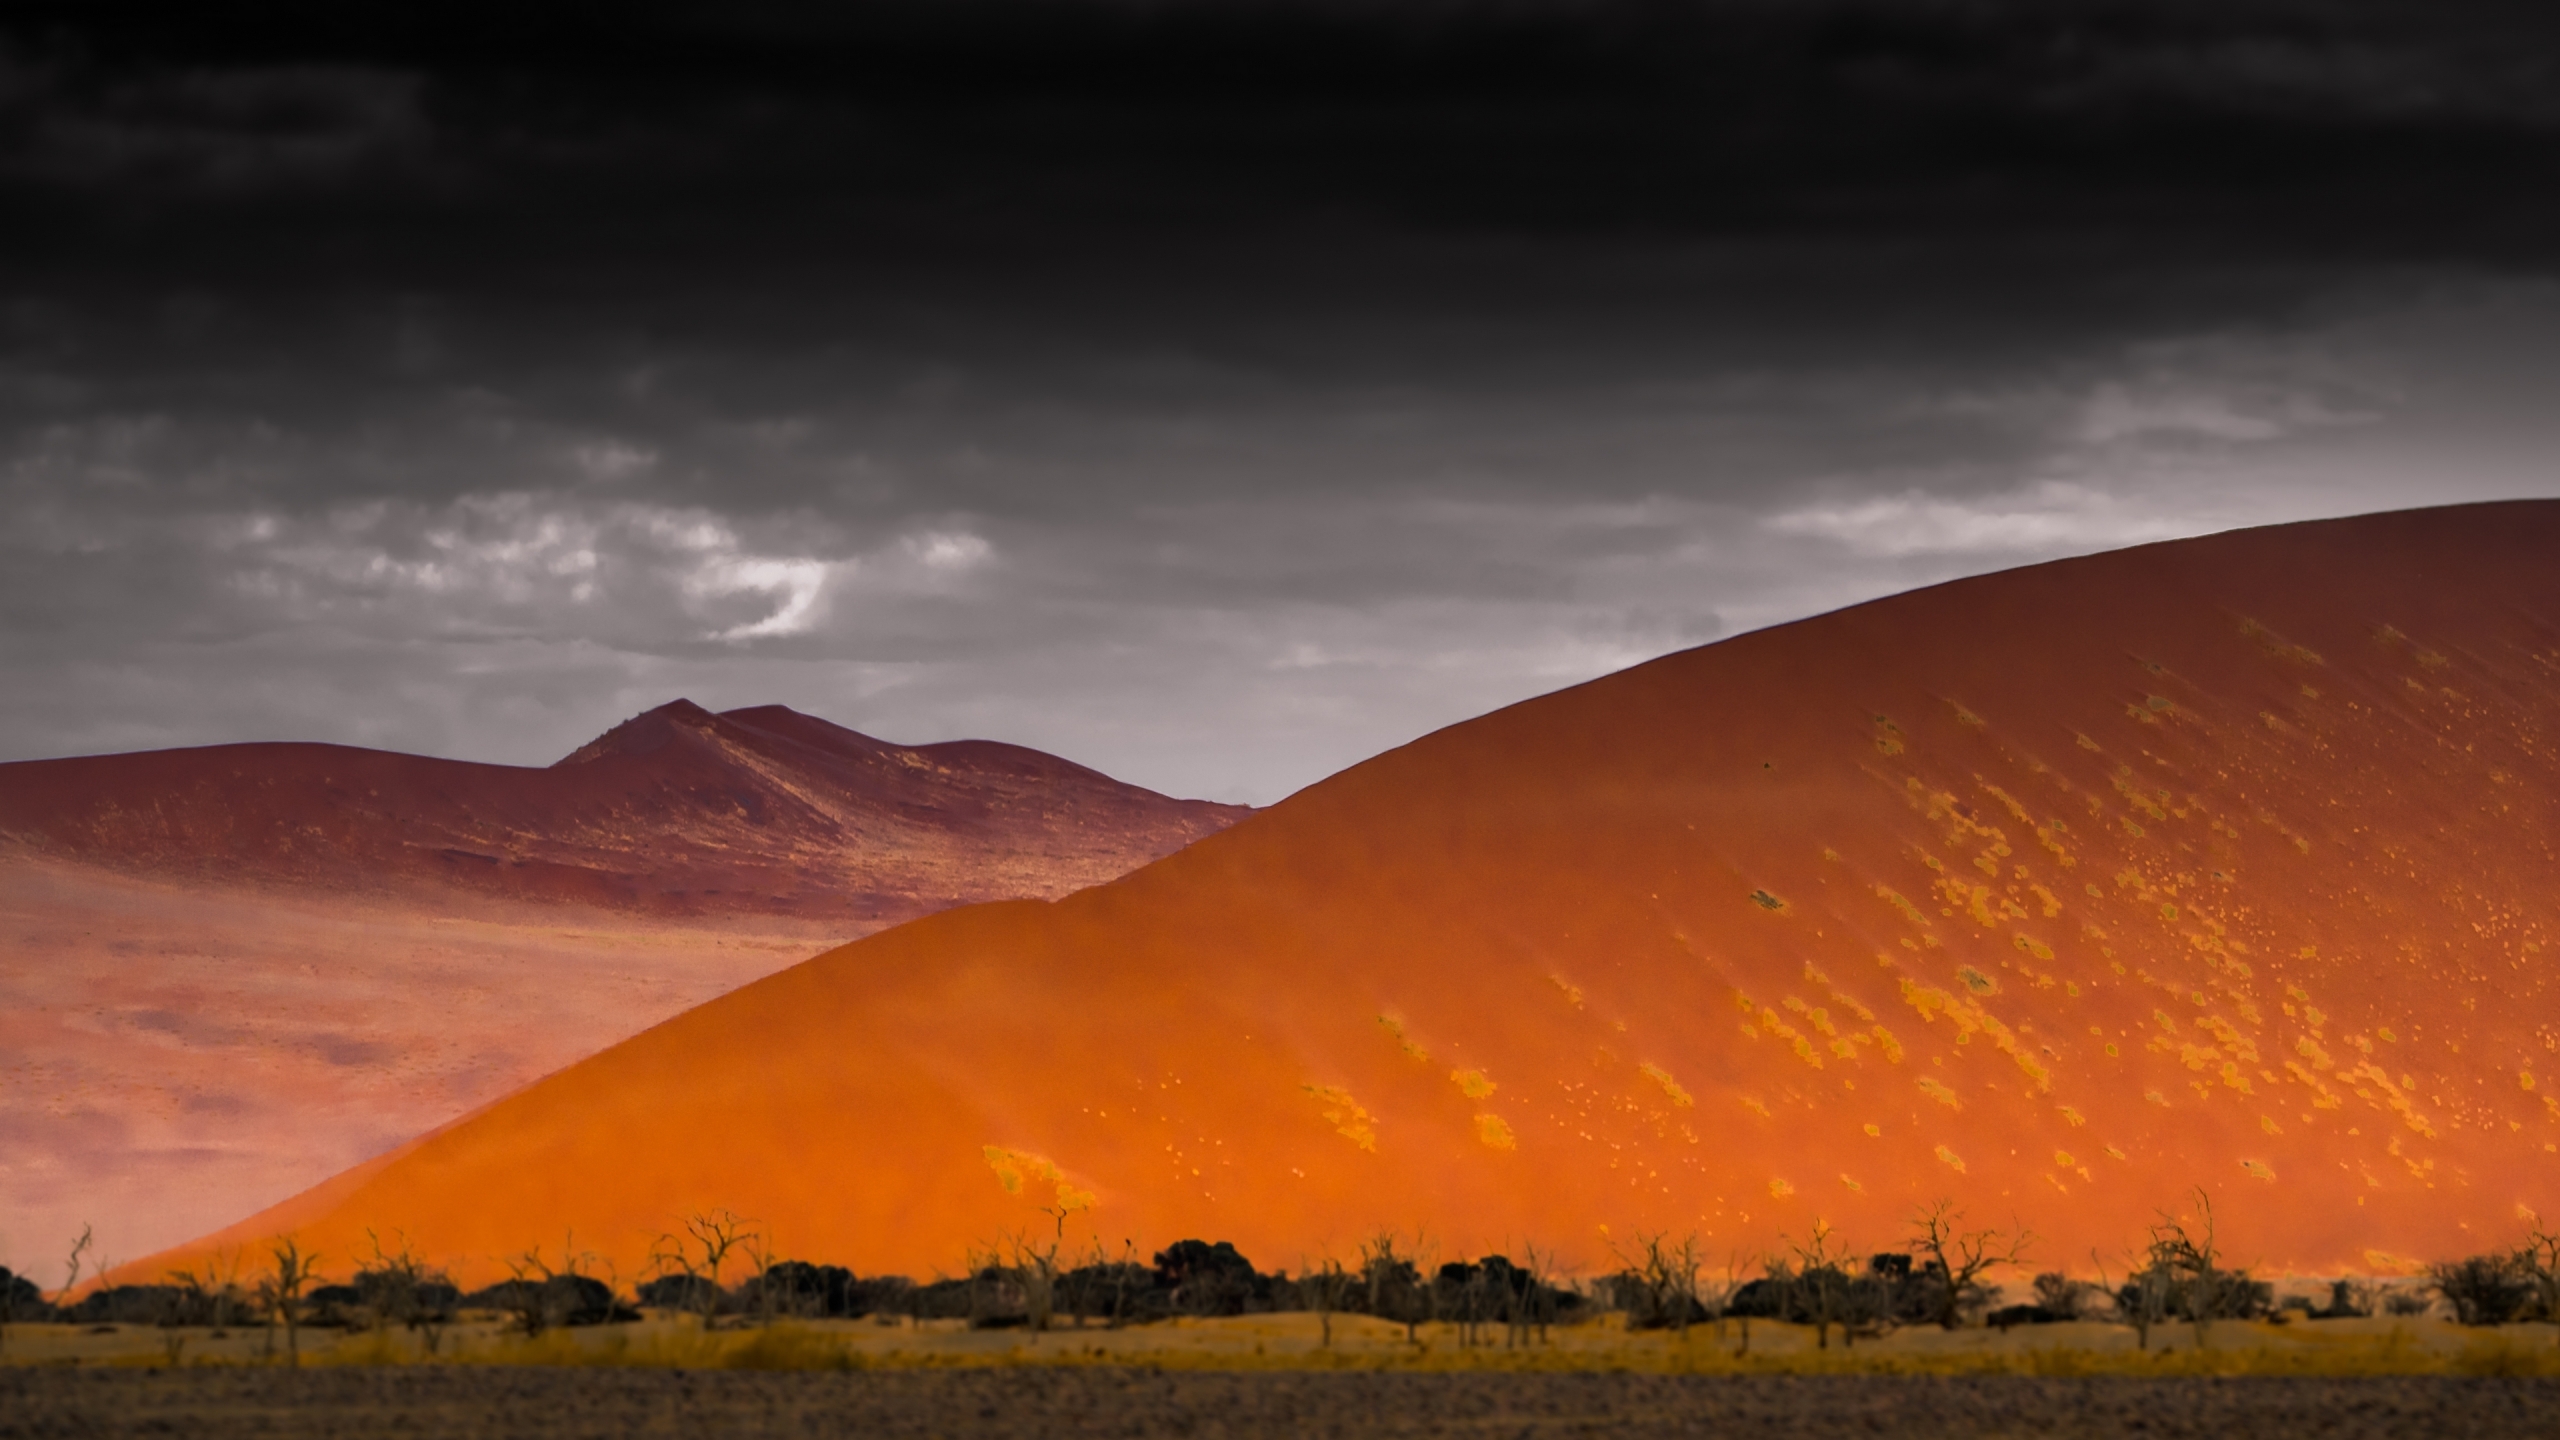 Atacama Desert for 2560x1440 HDTV resolution